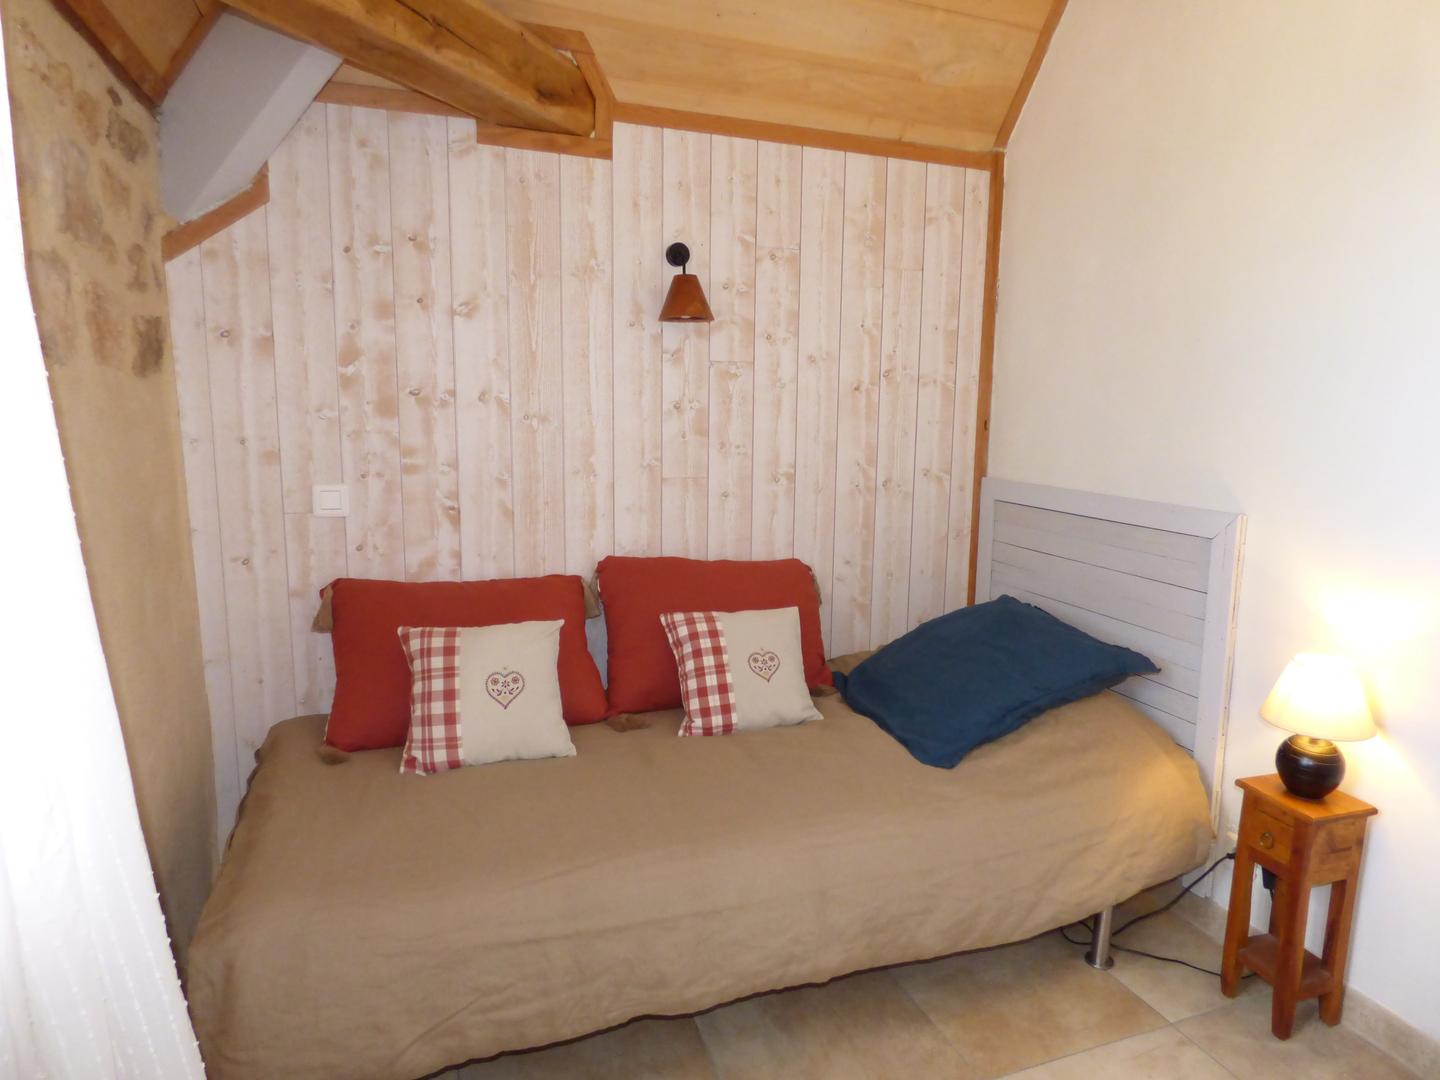 Hôte GreenGo: BRITAVIT Chambres et table d'Hôtes en Périgord - Image 9